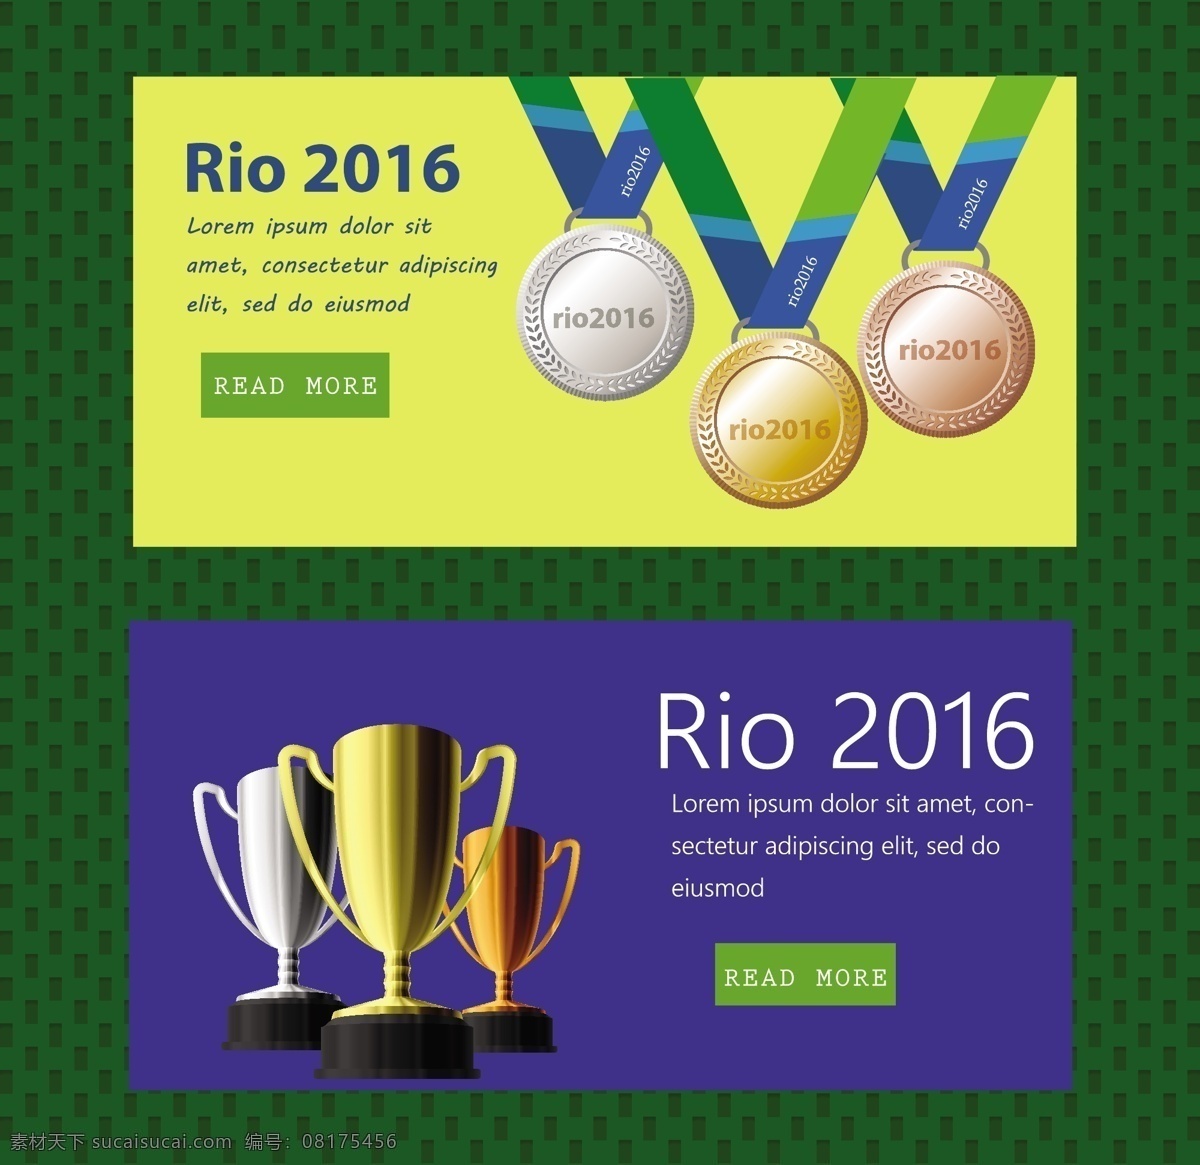 里约 奥运会 横幅 获奖者 金牌 金杯 矢量图 里约奥运会 巴西奥运会 2016 rio 黄色